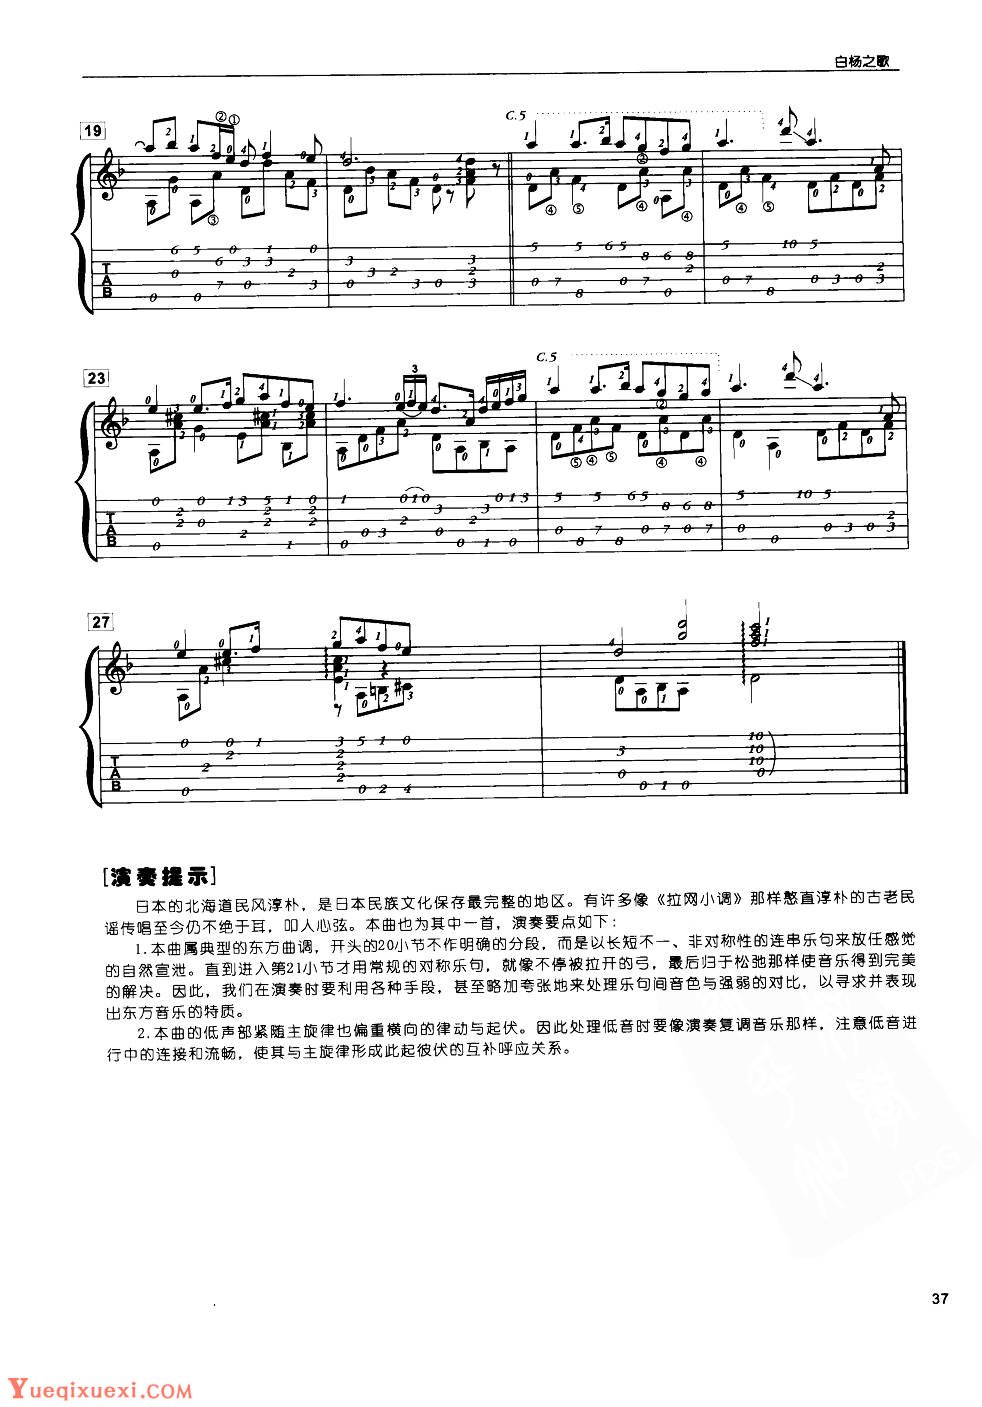 古典独奏曲《白杨之歌》日本民谣